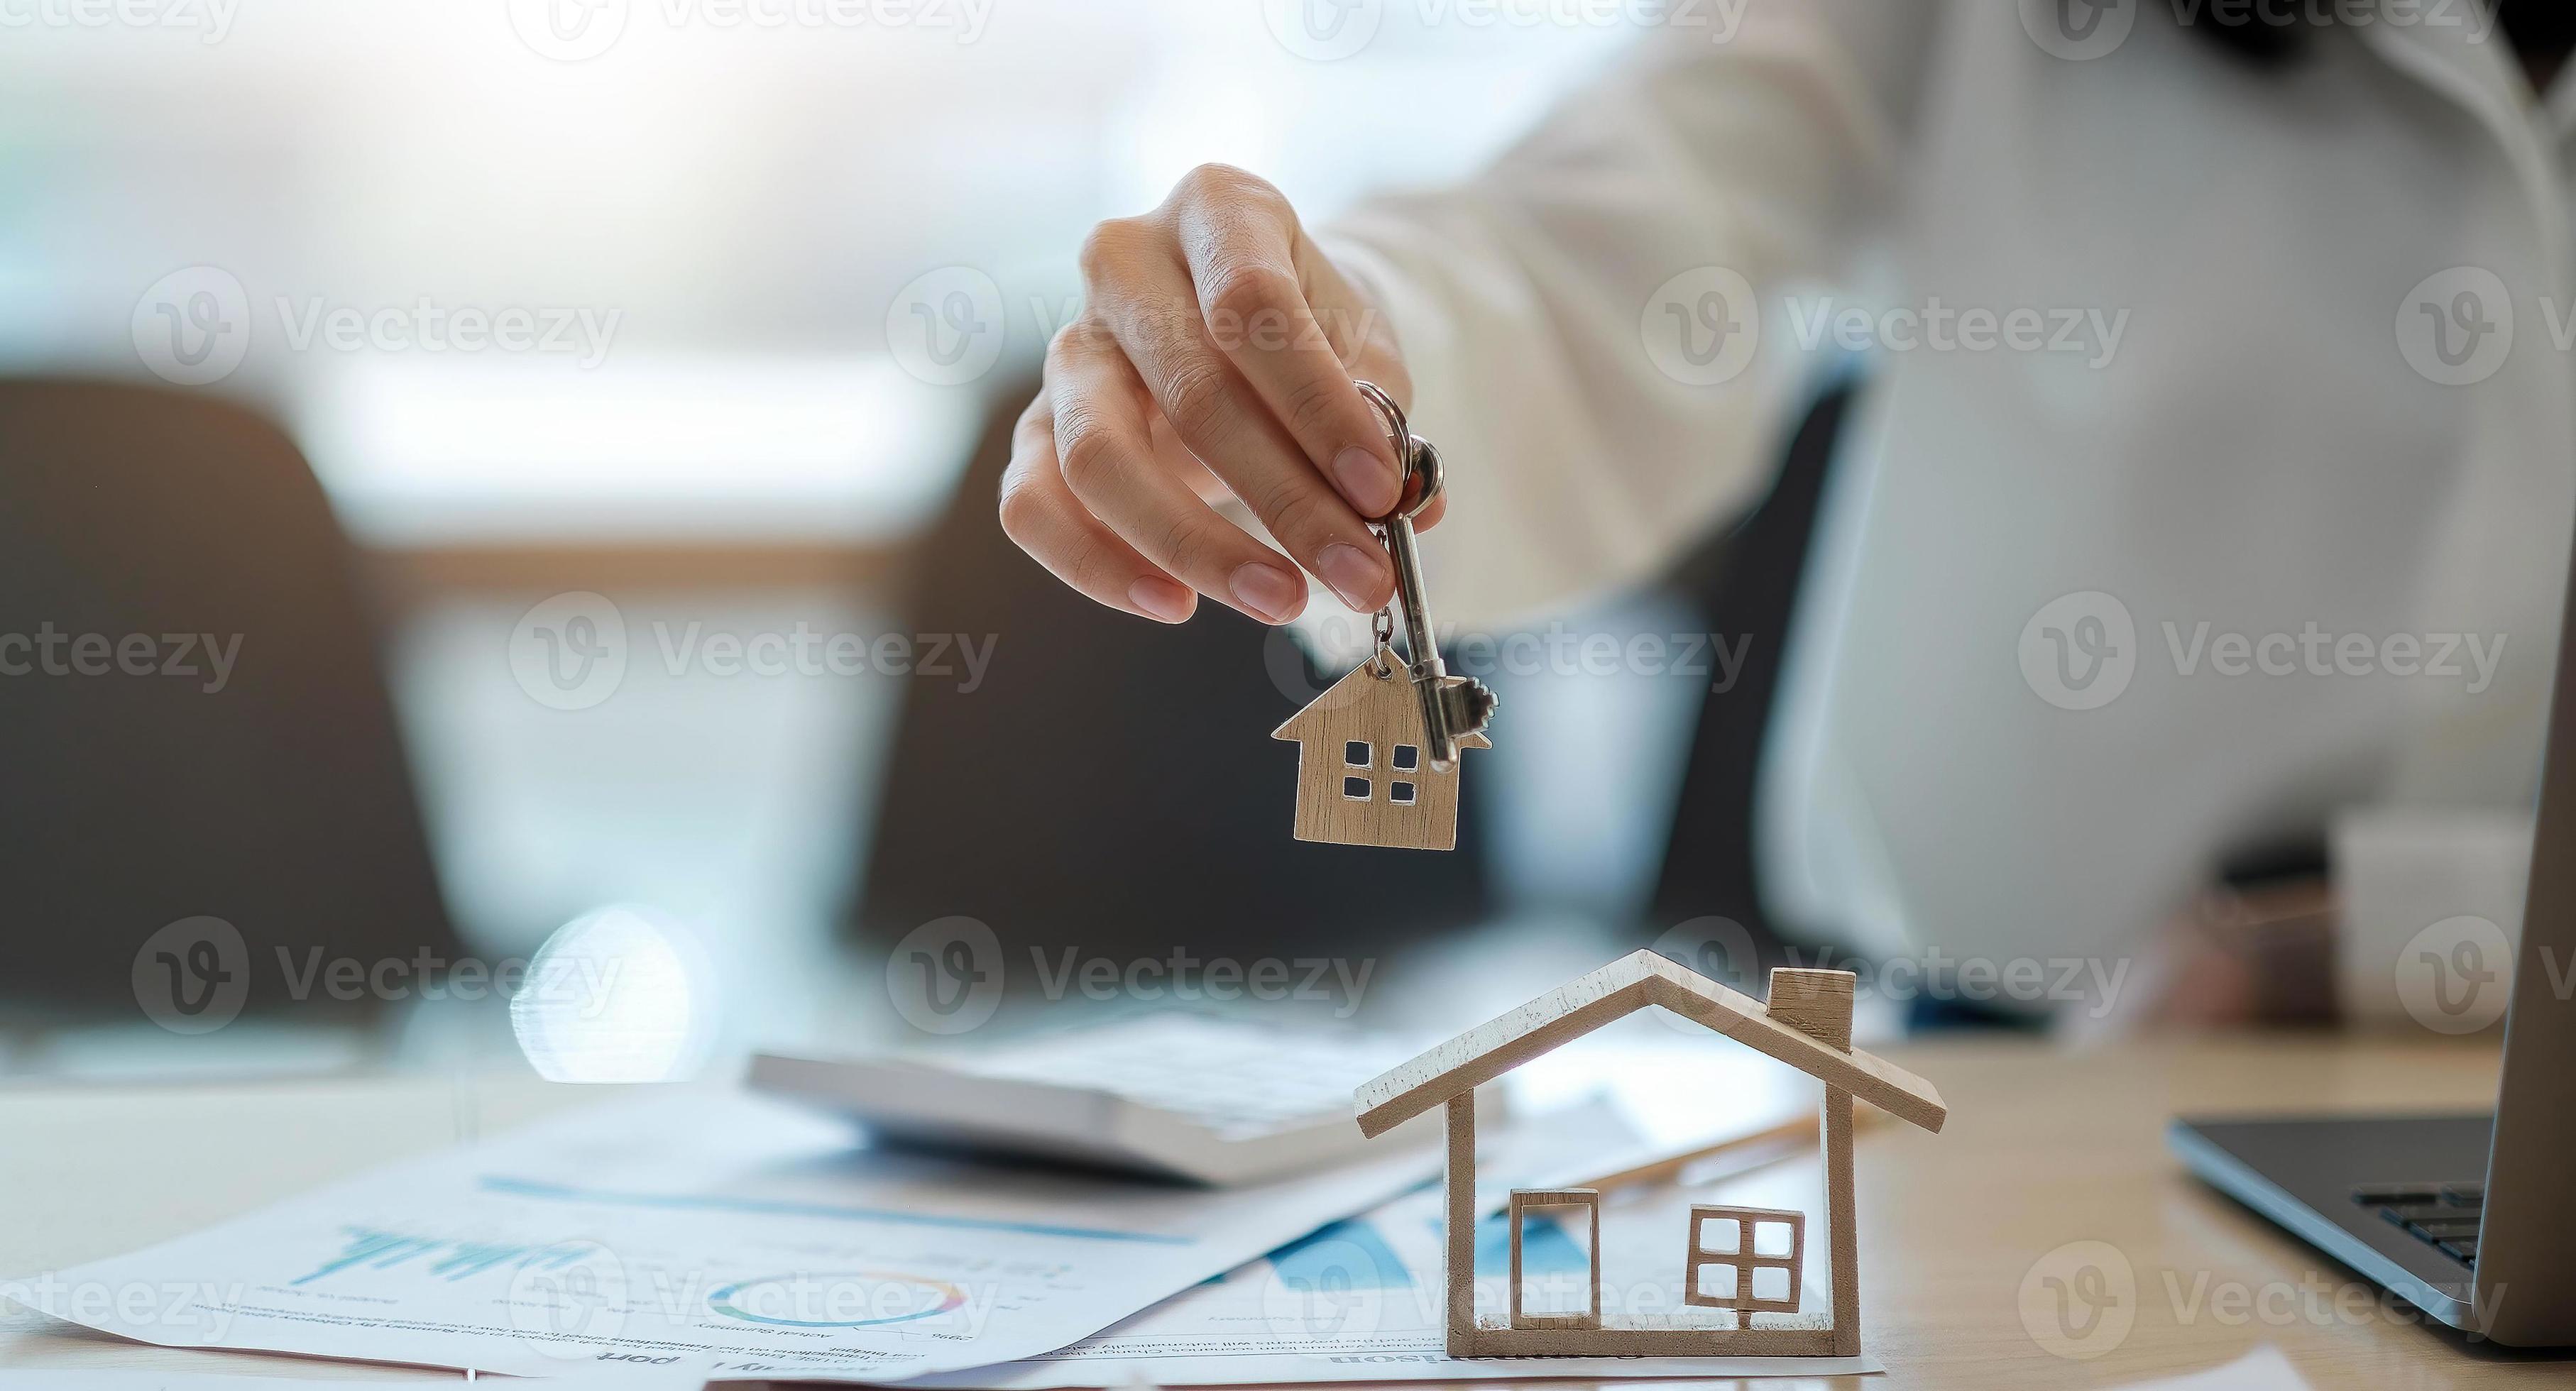 agente immobiliare che tiene la chiave di casa al suo cliente dopo aver firmato il contratto, concetto di immobile, trasloco o affitto di proprietà foto